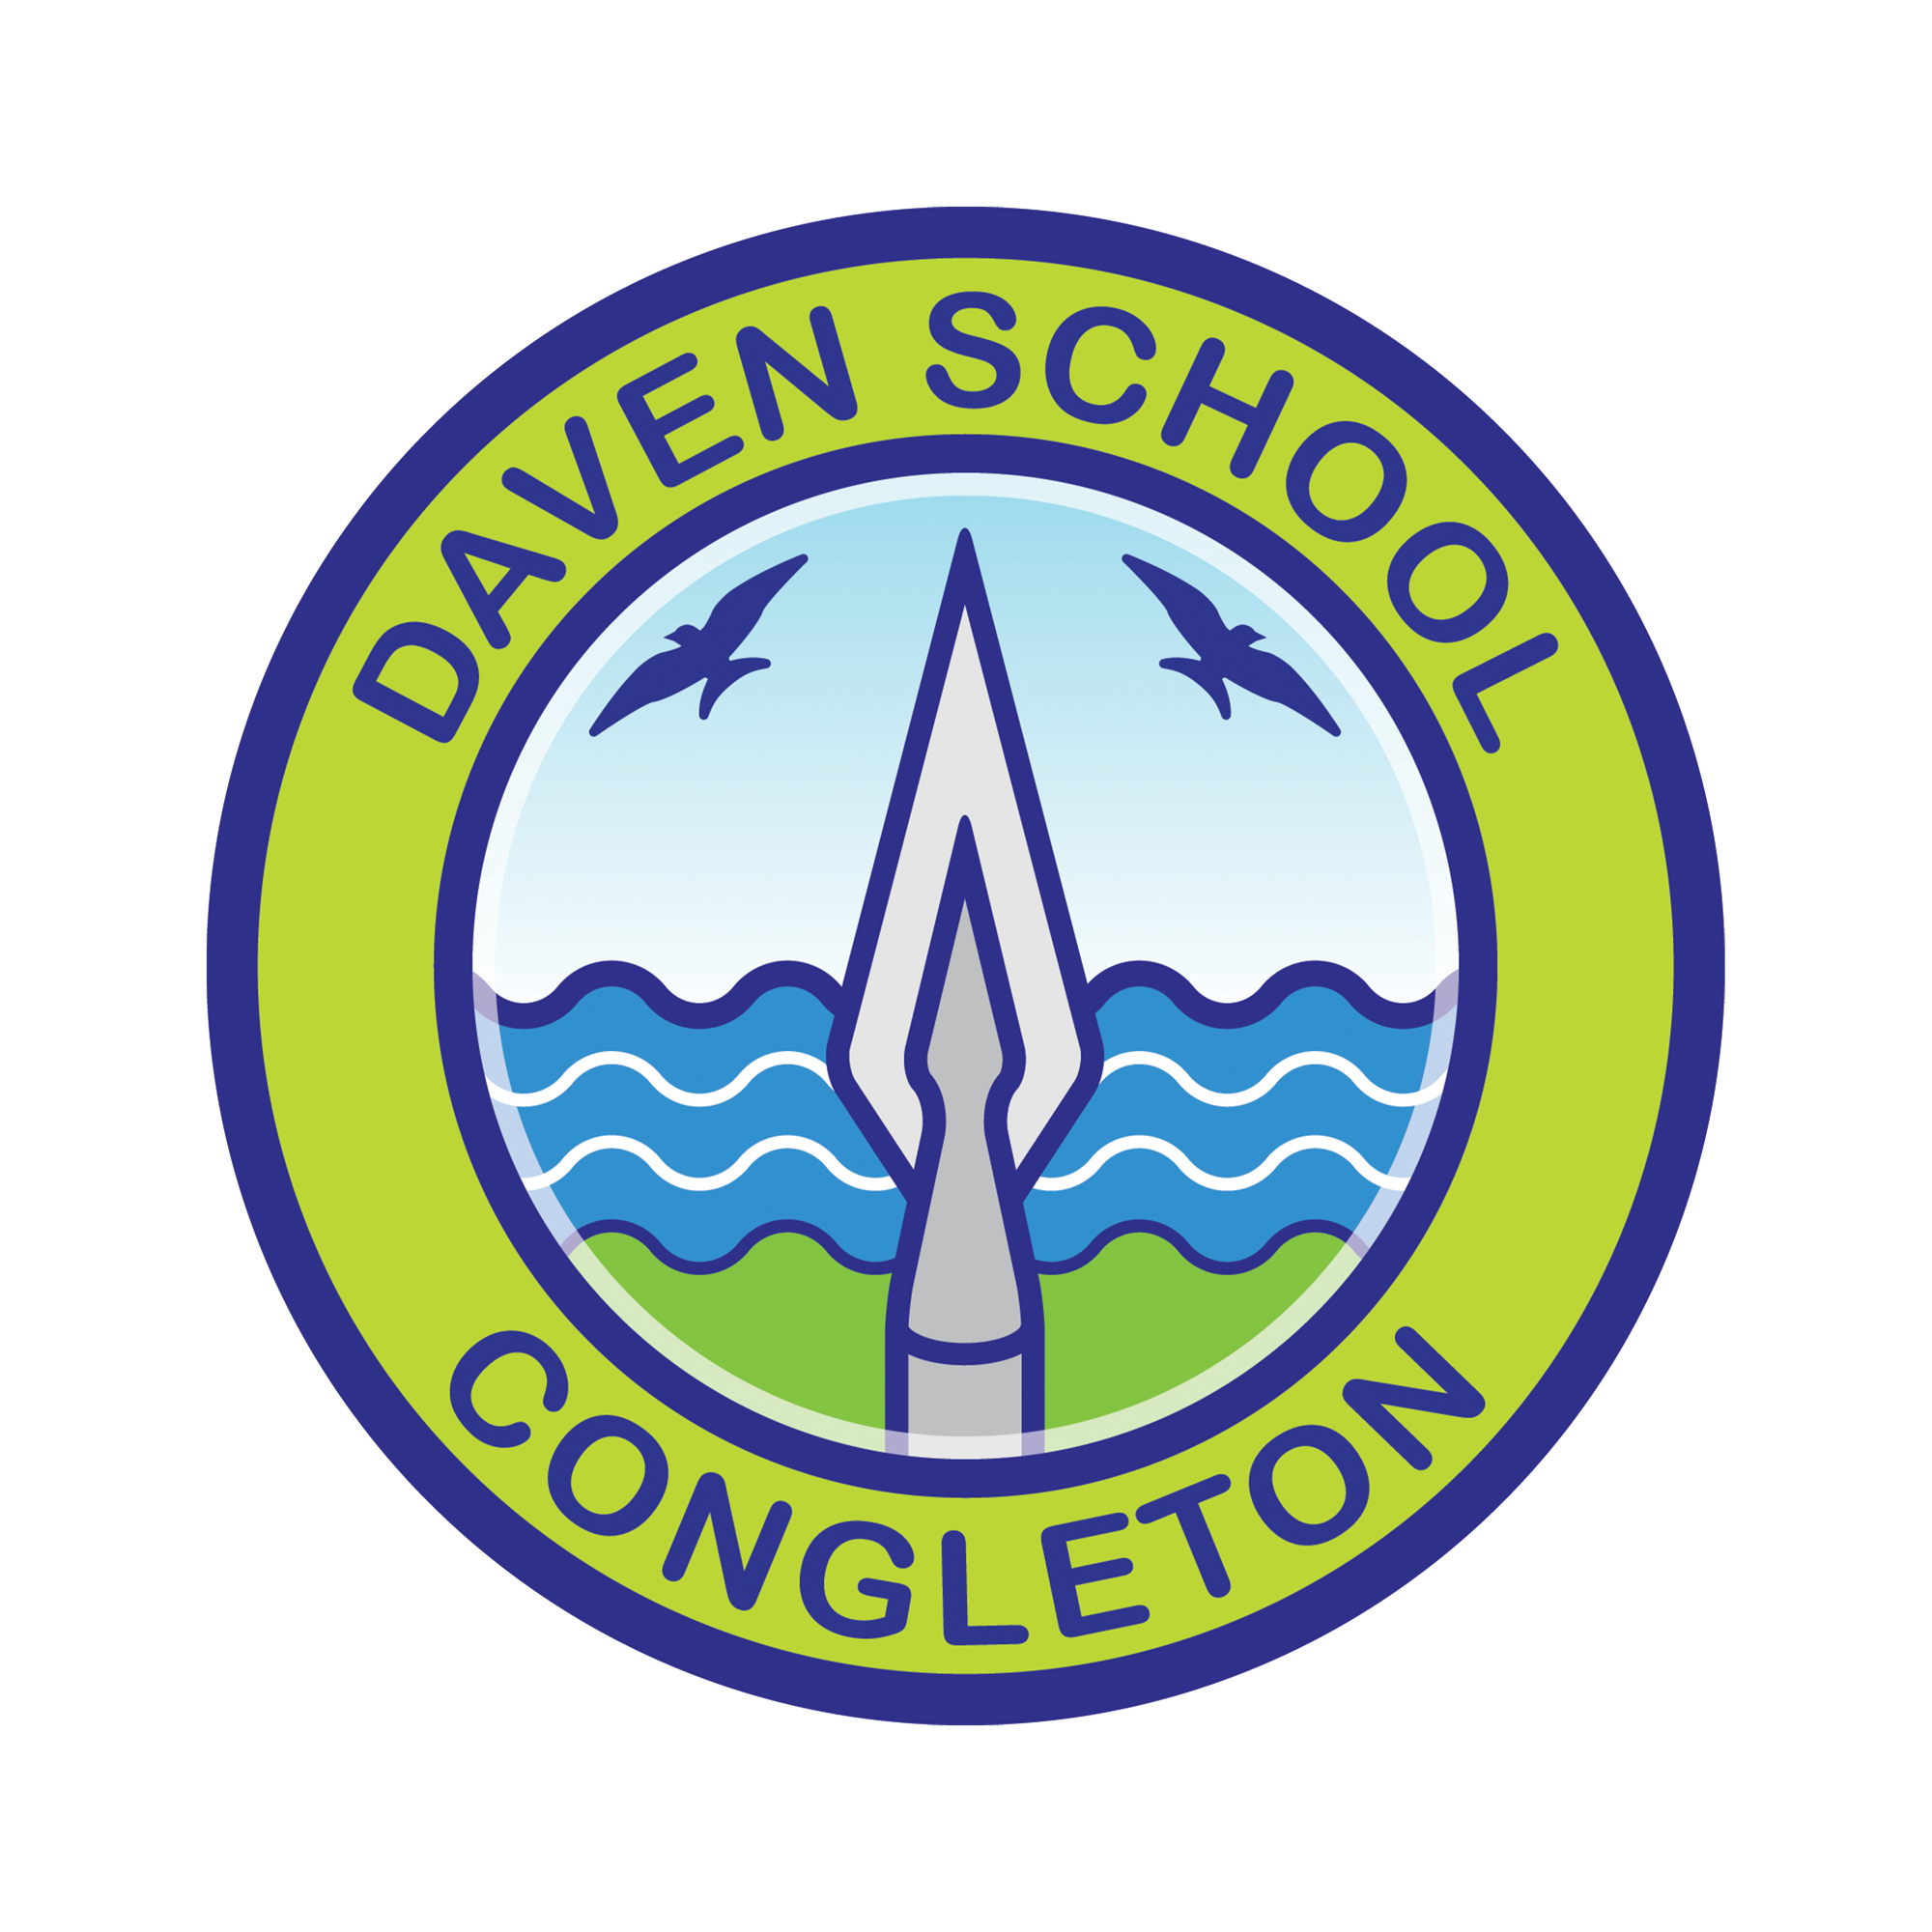 Daven Primary School